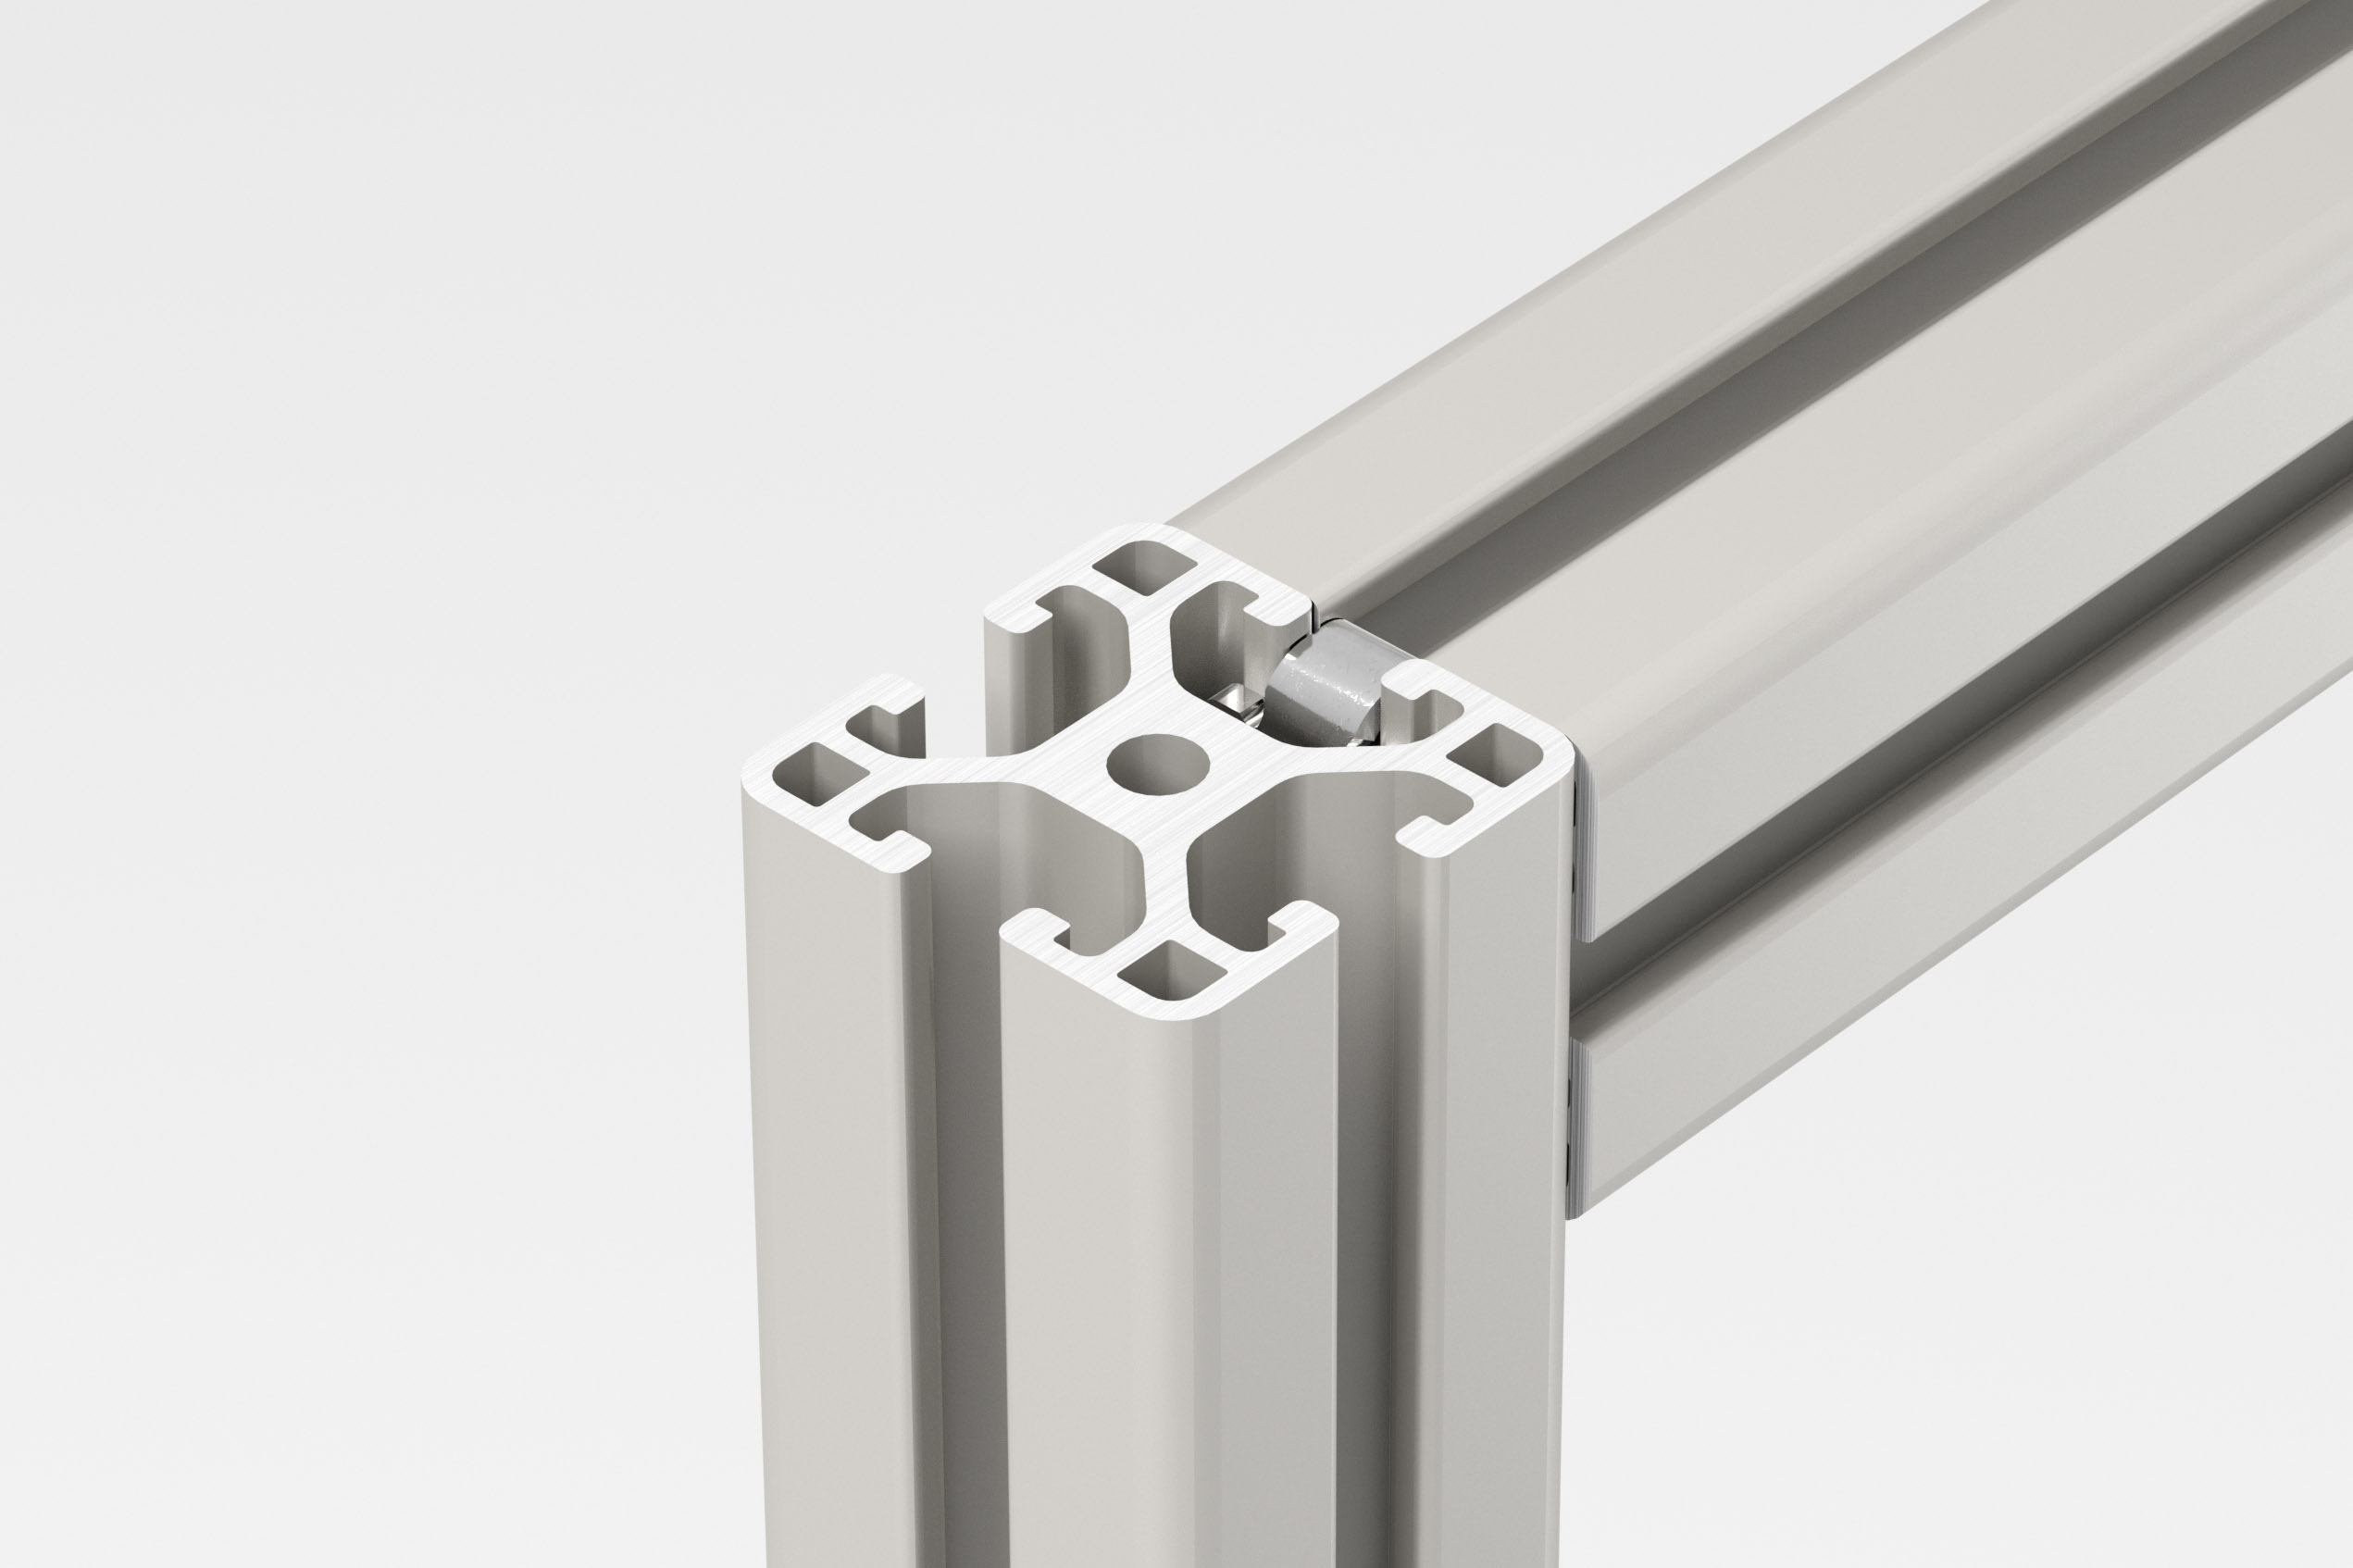 Perfil estructural de aluminio Familia 6 de 30x30 L - Colsein Online